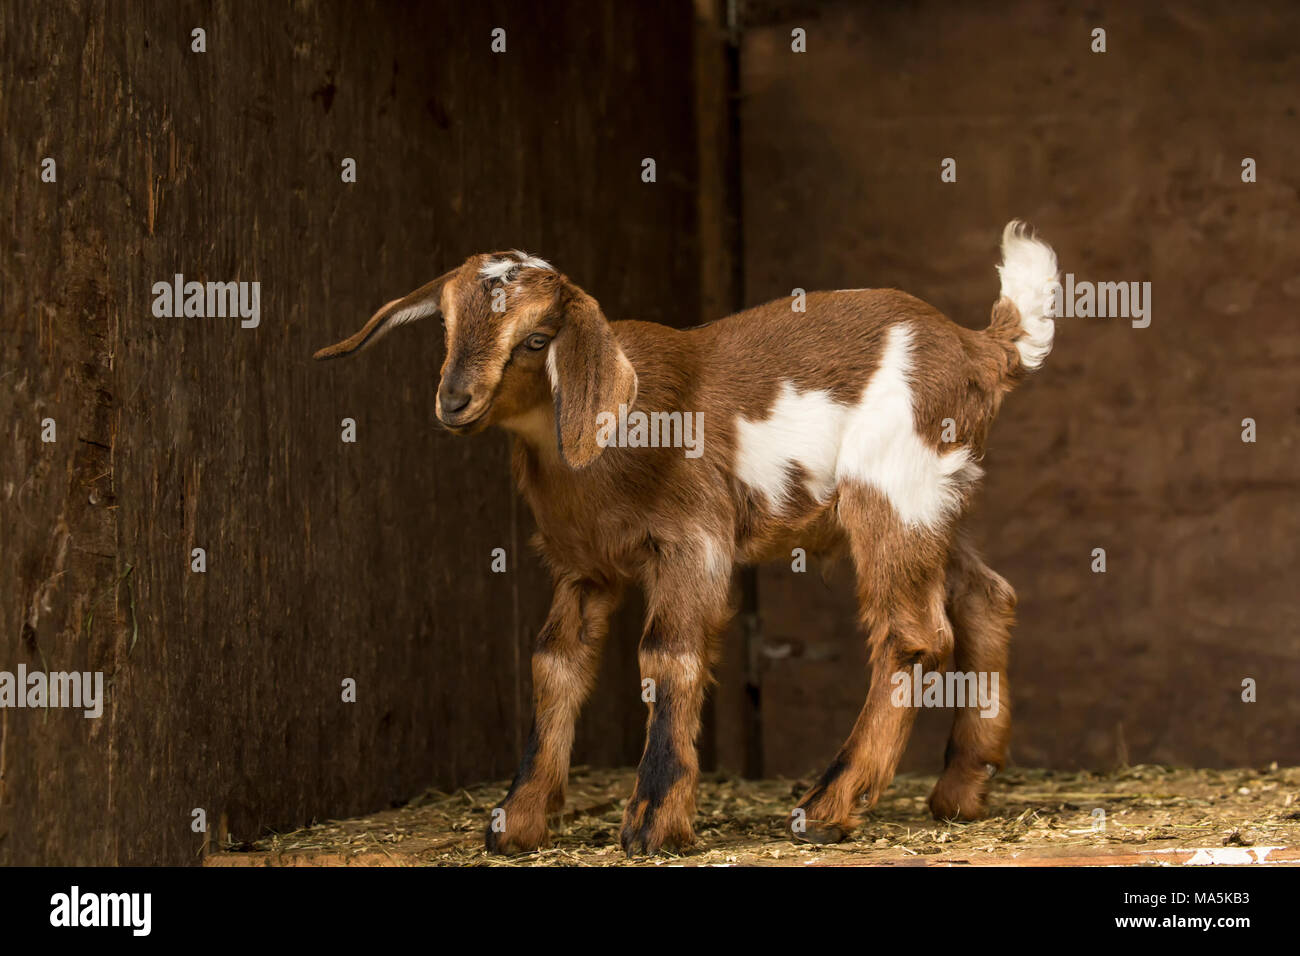 12 Tage alten Mischling Nubian und Boer goat Kid in einem offenen Bereich, in der Scheune posing Stockfoto